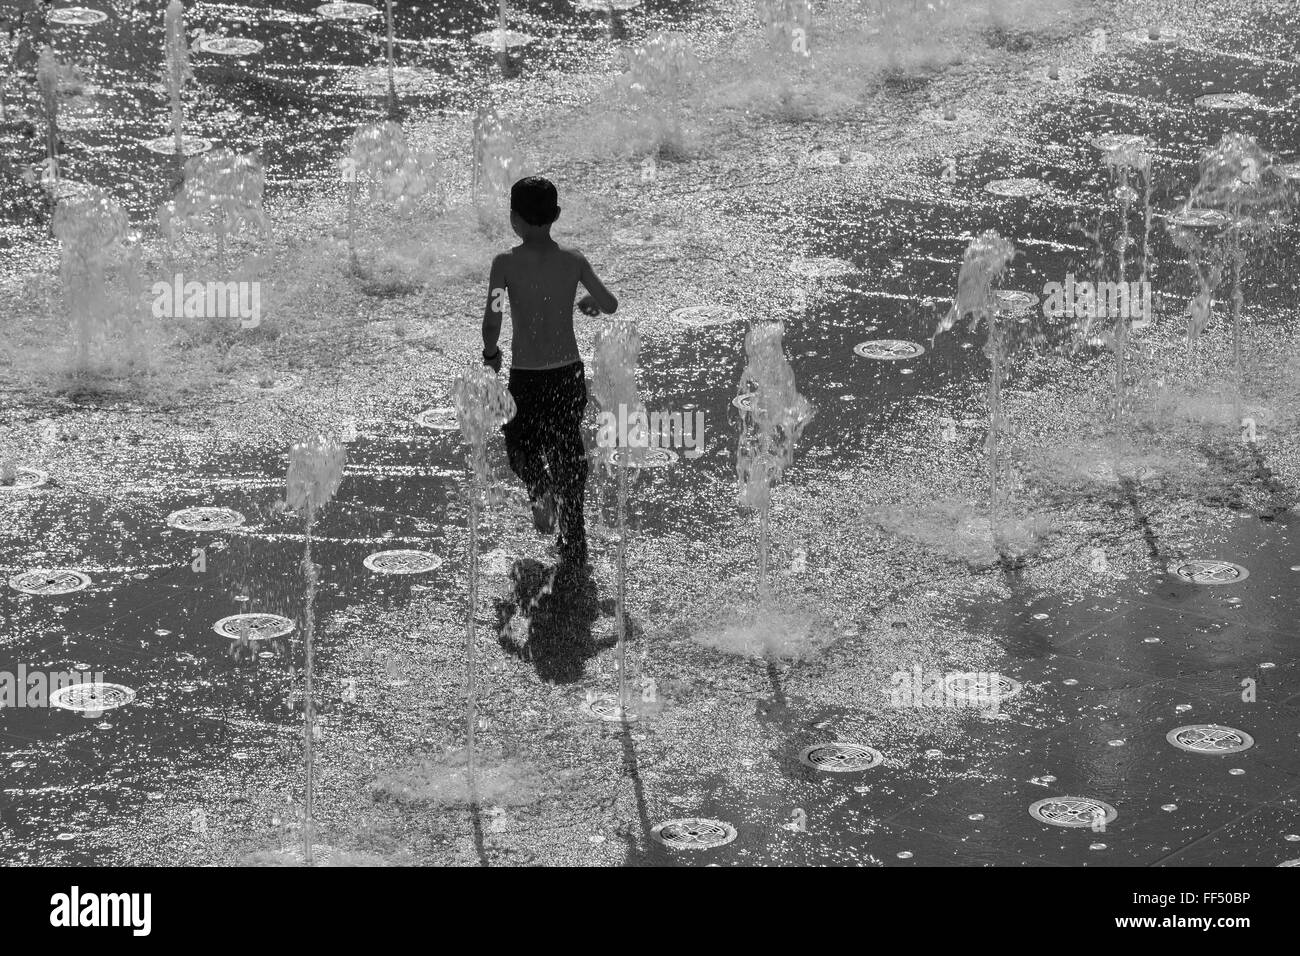 Jérusalem, Israël - mars 6 , 2015 : Le petit garçon jouant dans la fontaine de Teddy Park. Banque D'Images